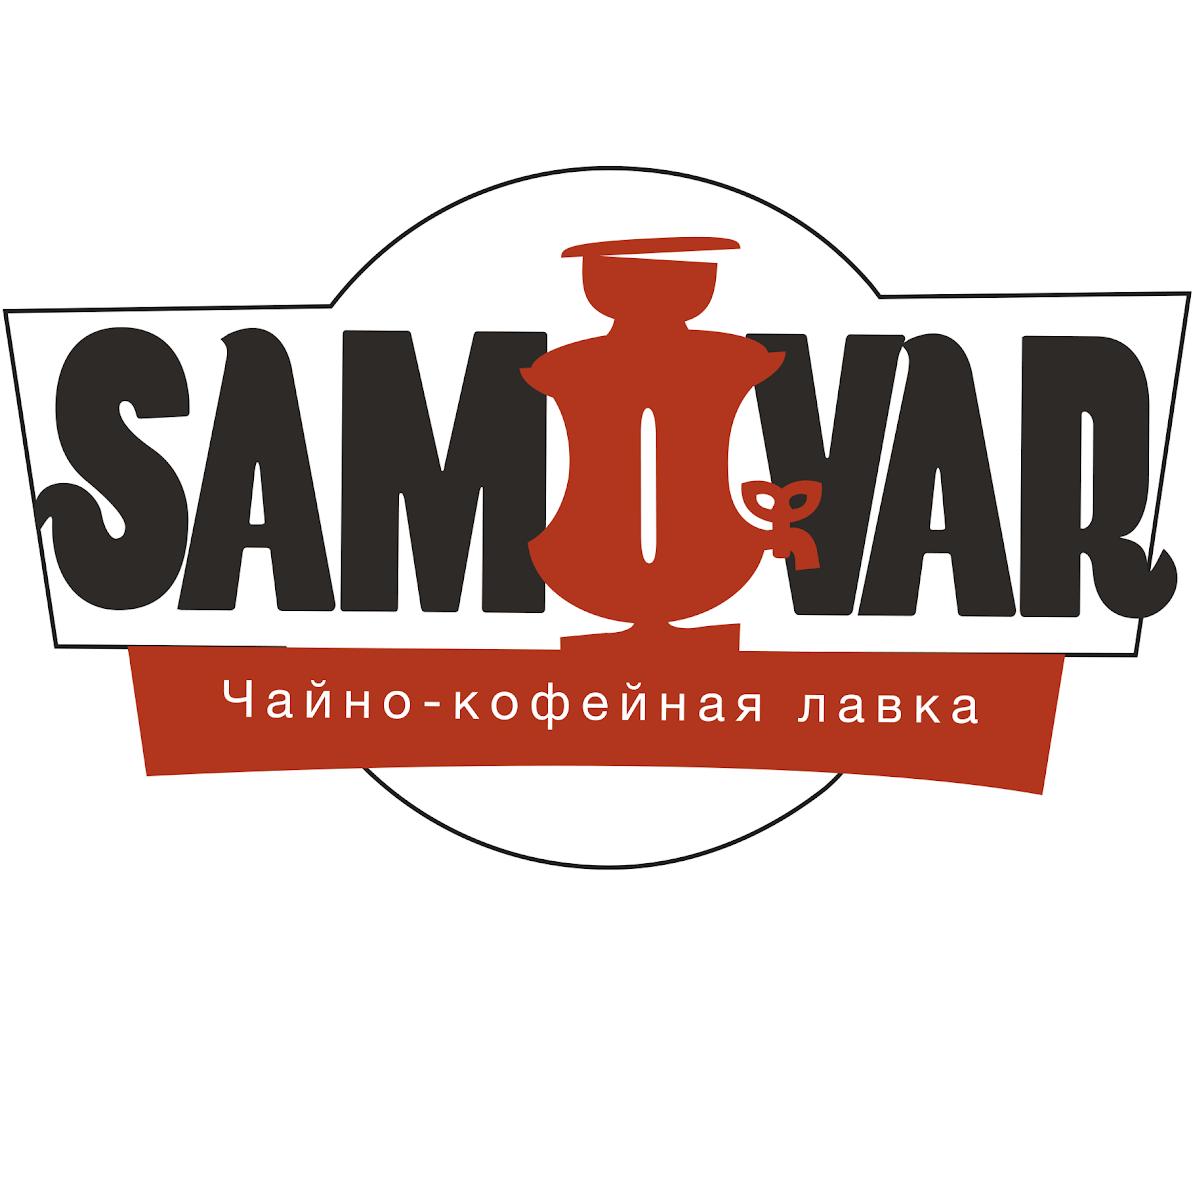 Чайно-кофейная лавка "Самовар"